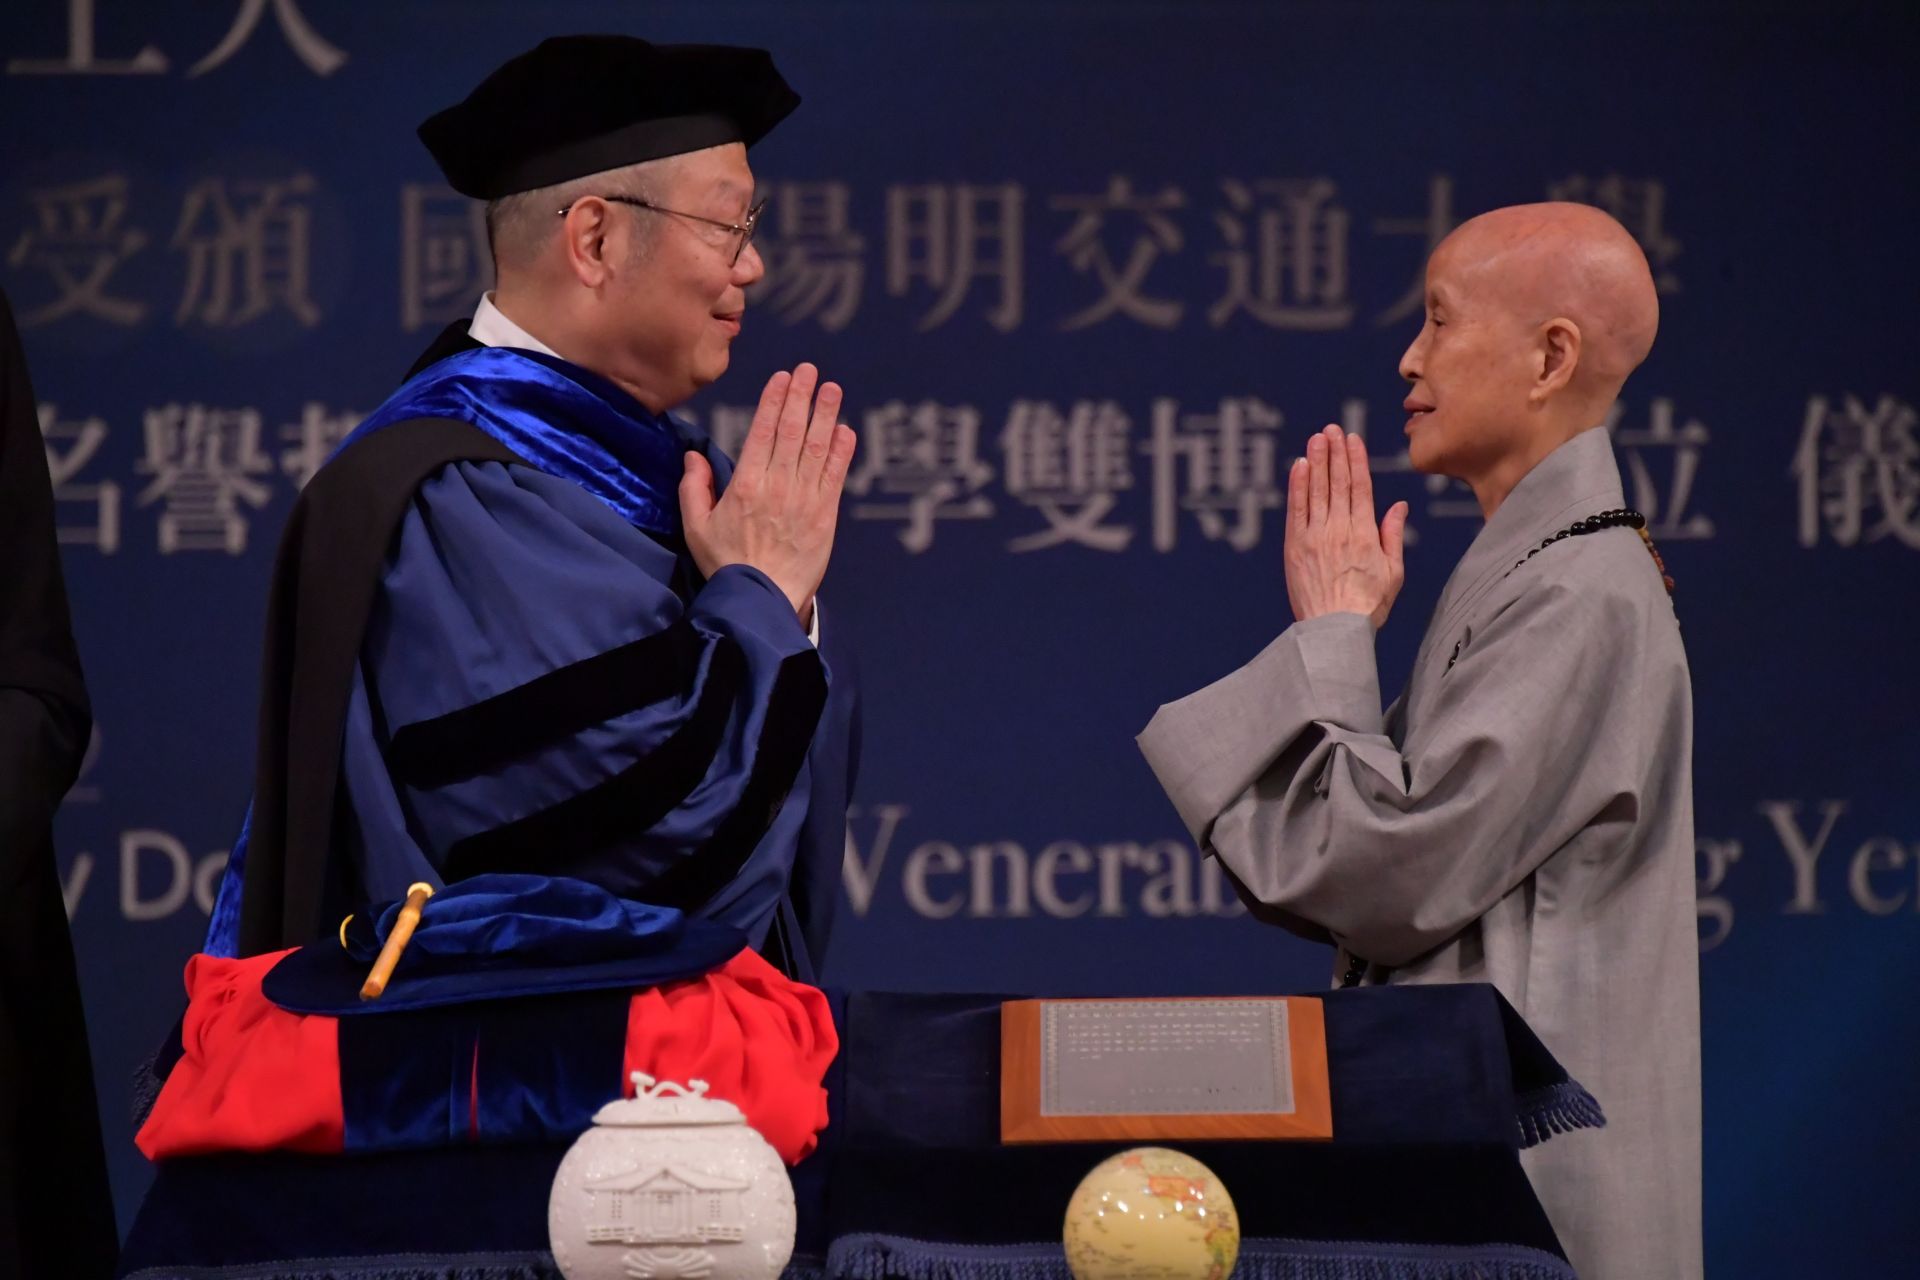 國立陽明交通大學5月12日由林奇宏校長(左)頒贈名譽哲學暨醫學雙博士學位給慈濟證嚴法師(右)。